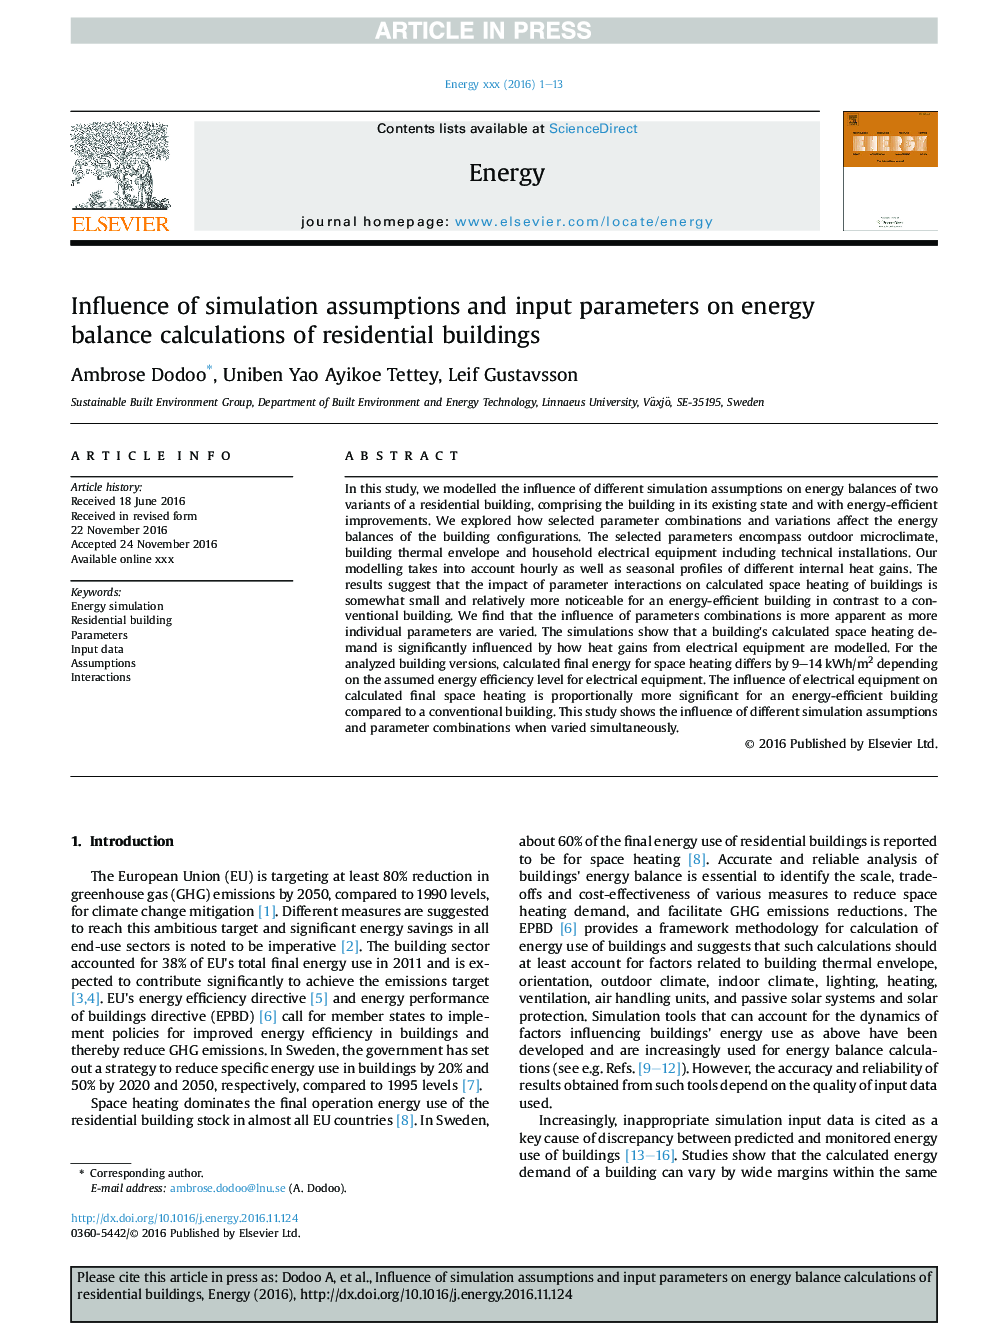 تأثیر پیش بینی های شبیه سازی و پارامترهای ورودی بر محاسبات توازن انرژی ساختمان های مسکونی 